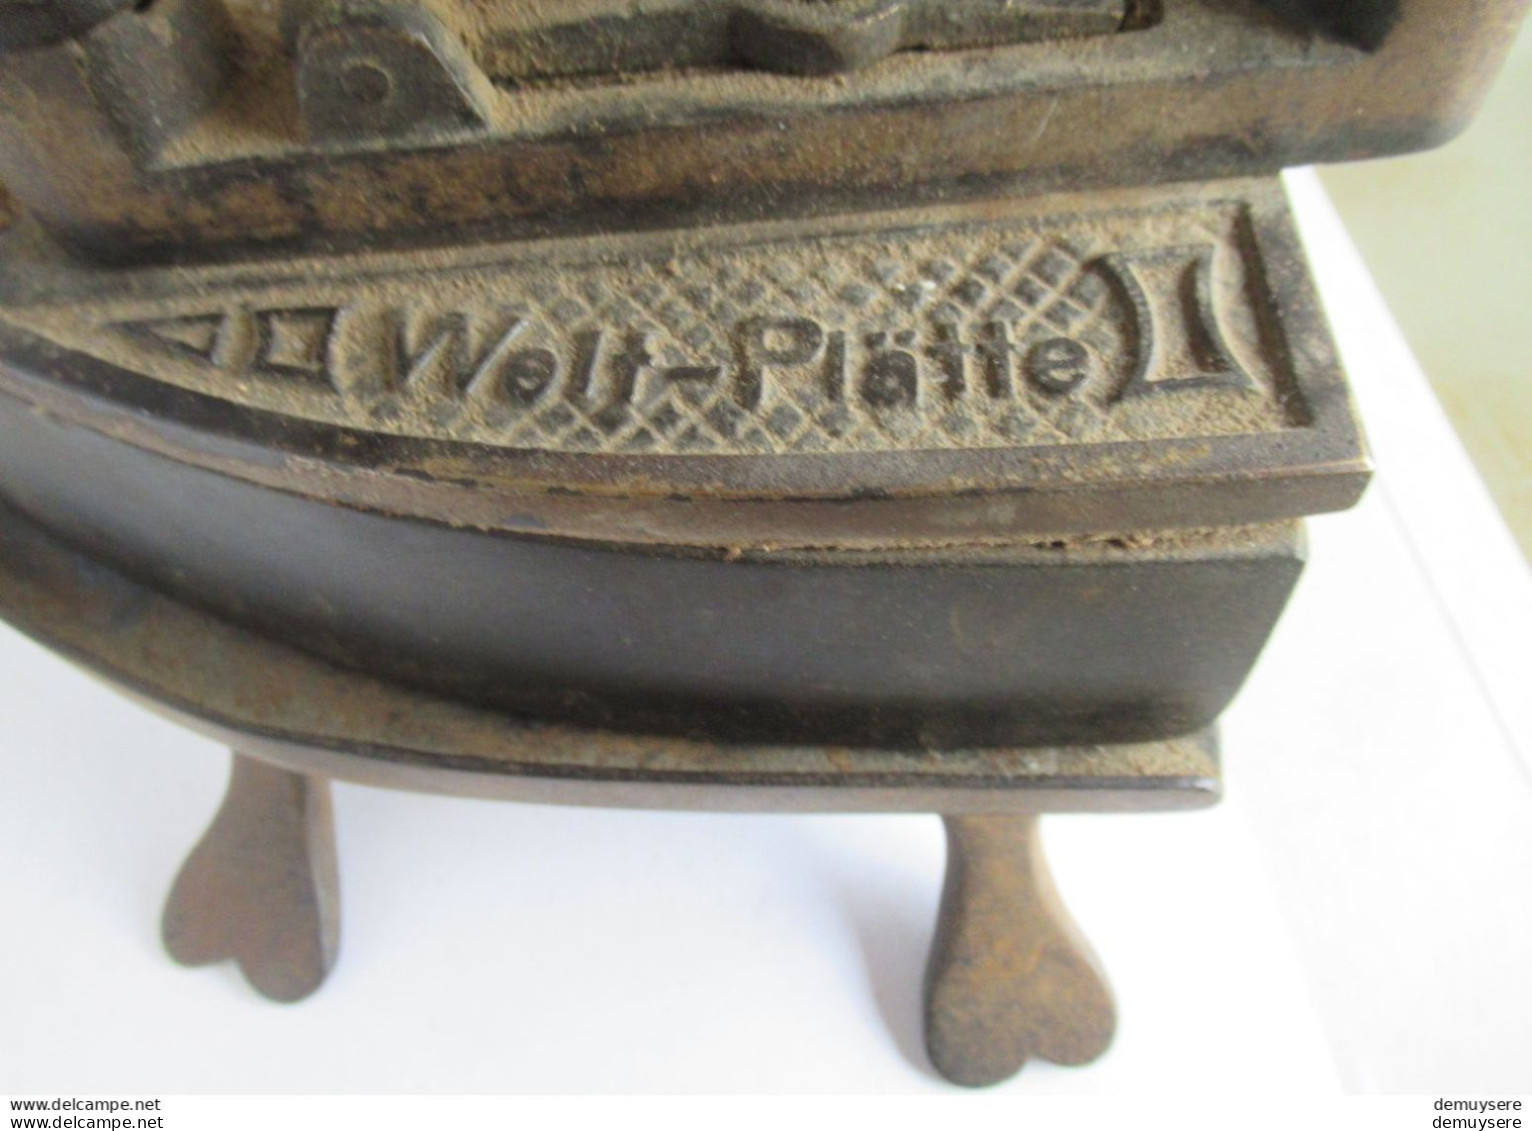 0404 16 - 50-25- LADE  700 - Antiek Strijkijzer Met Voet - Fer Antique Avec Base - Welt Platte -  4100 Gram - Ancient Tools